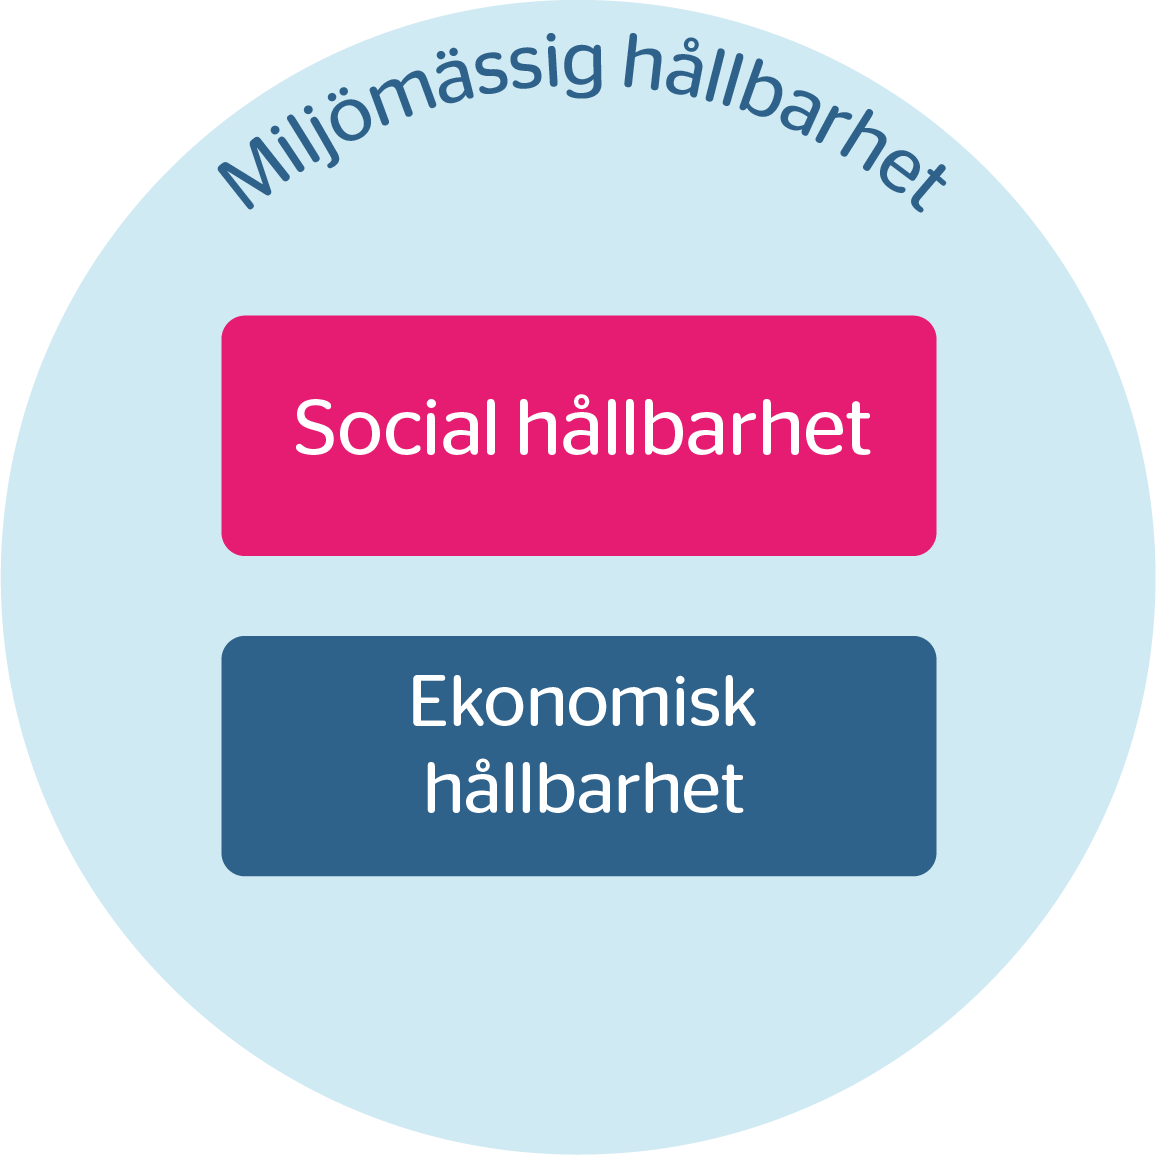 Blå cirkel med texten "miljömässig hållbarhet". I den blå cirkeln finns två rektanglar där det står "Social hållbarhet" respektive "Ekonomisk hållbarhet".